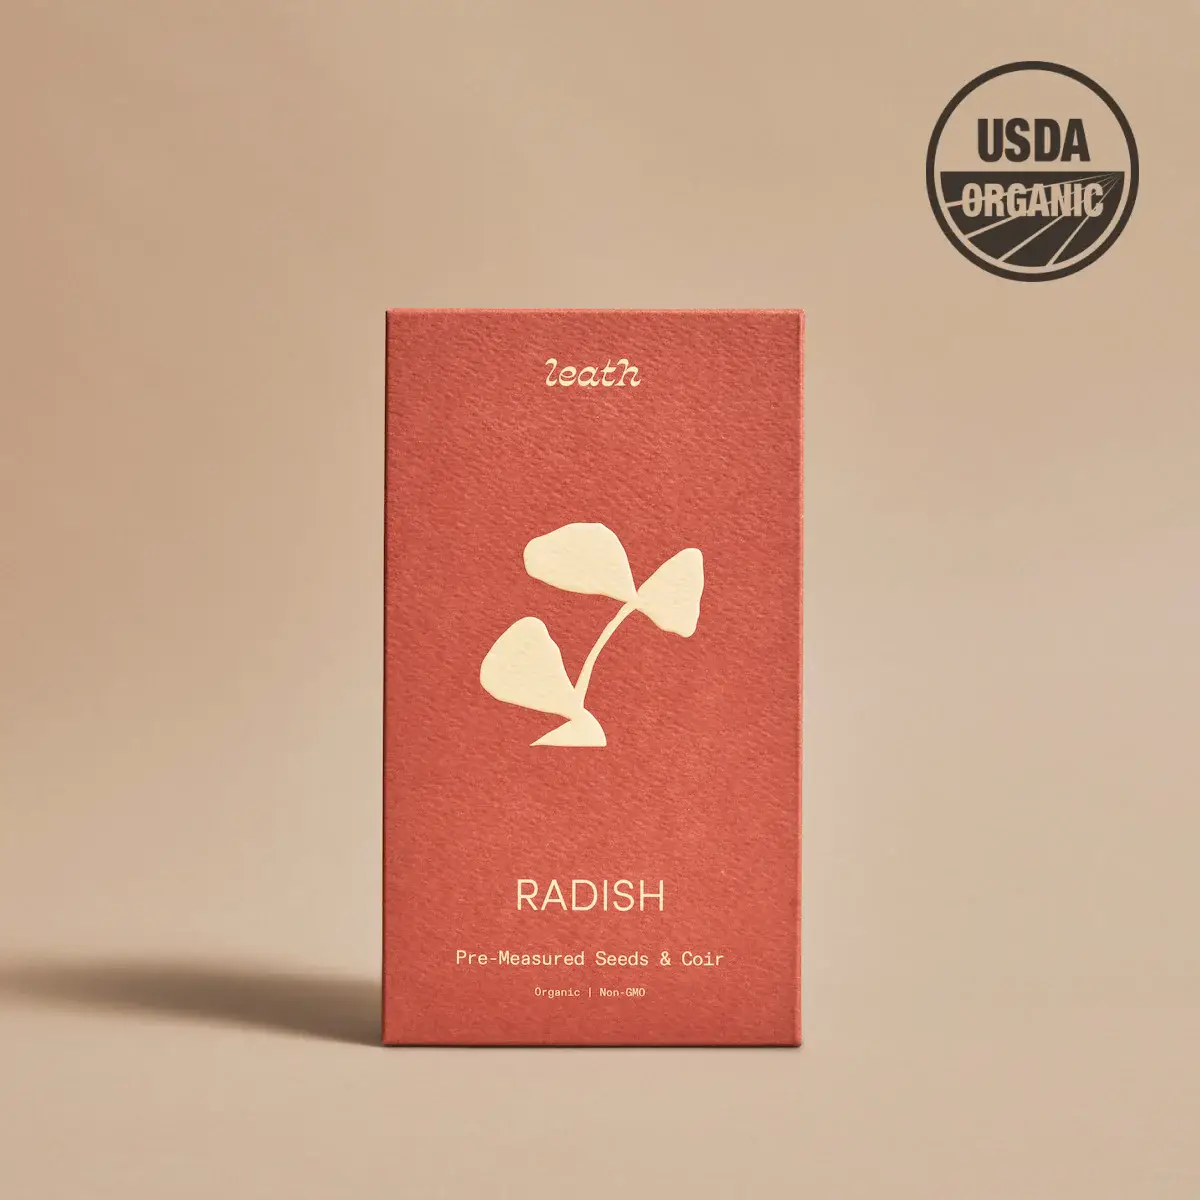 Leathlet - Radish